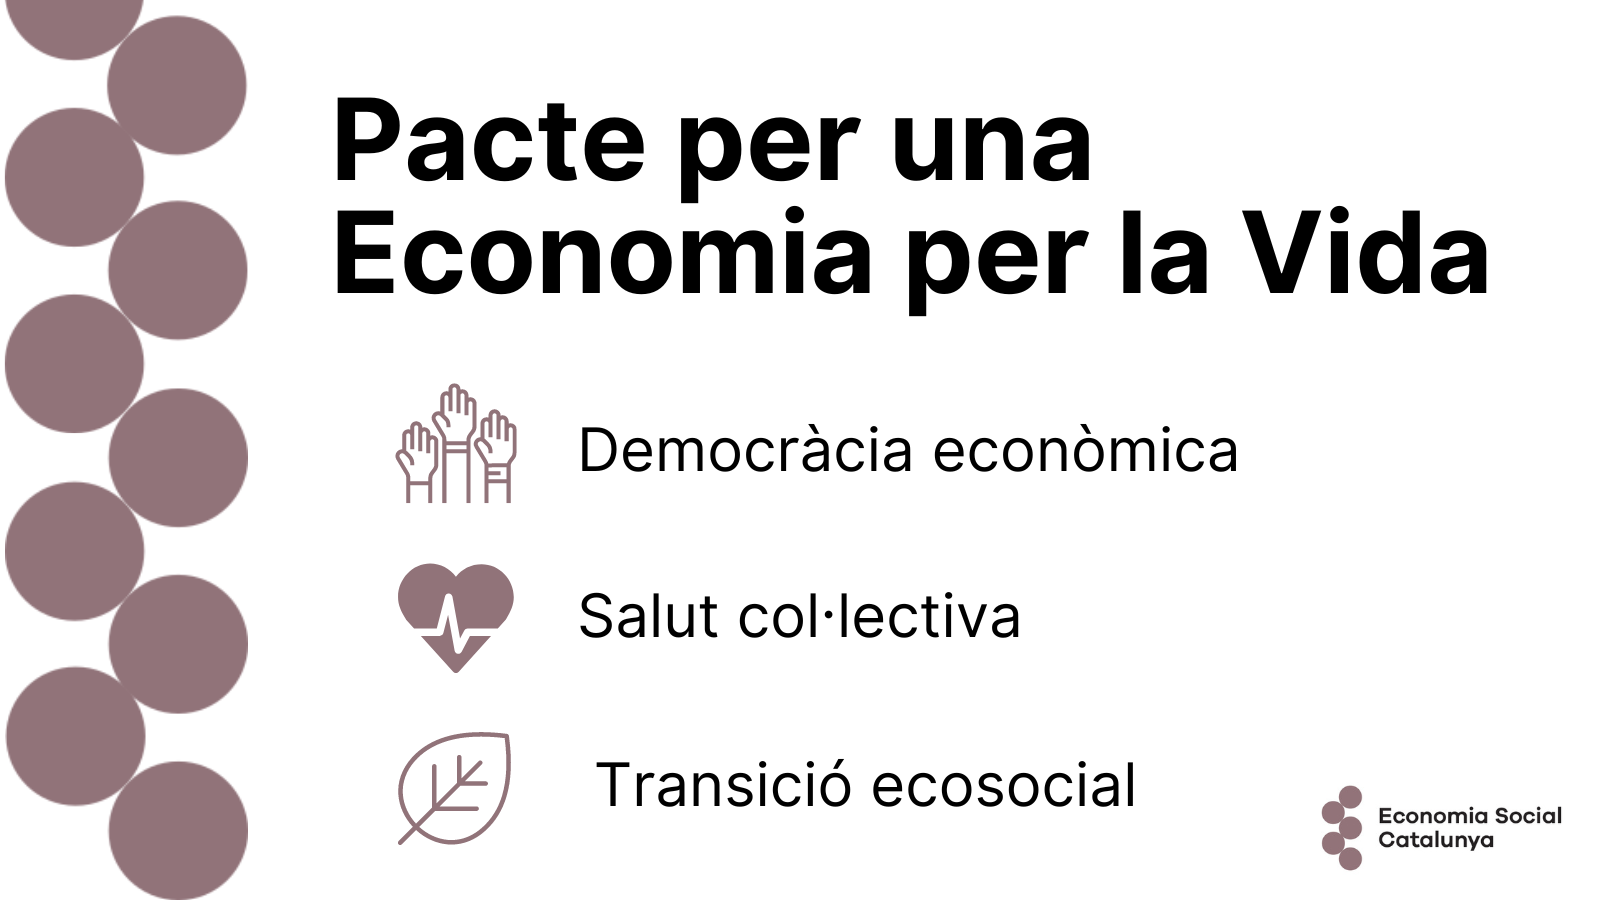 Pacte per una Economia per la Vida Democràcia econòmica Salut col·lectiva Transició ecosocial